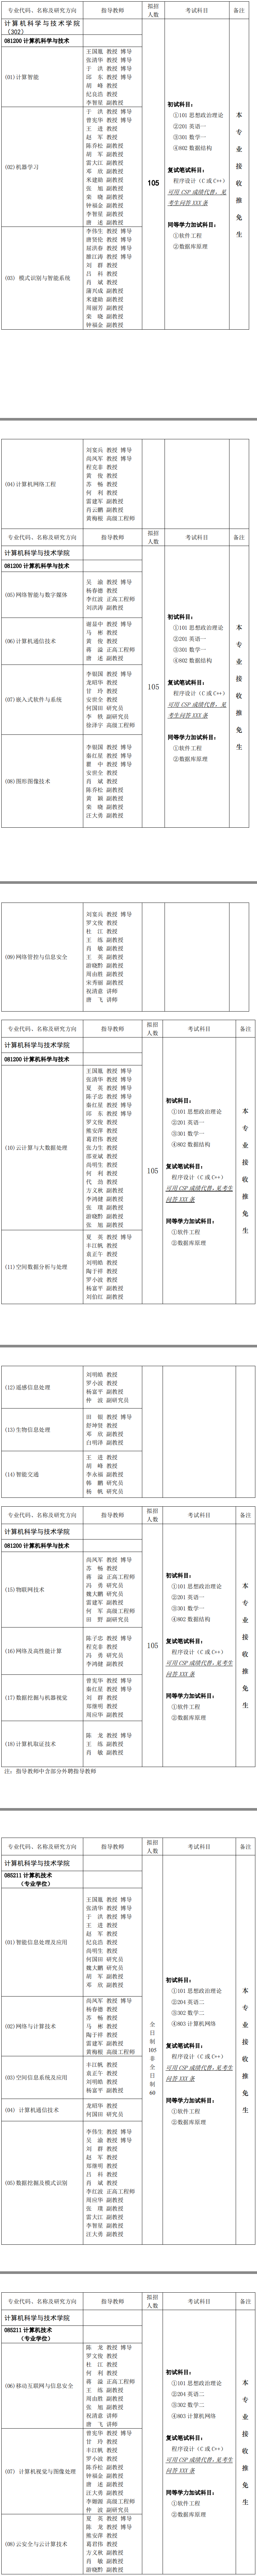 重庆邮电大学计算机科学与技术学院2019考研专业目录